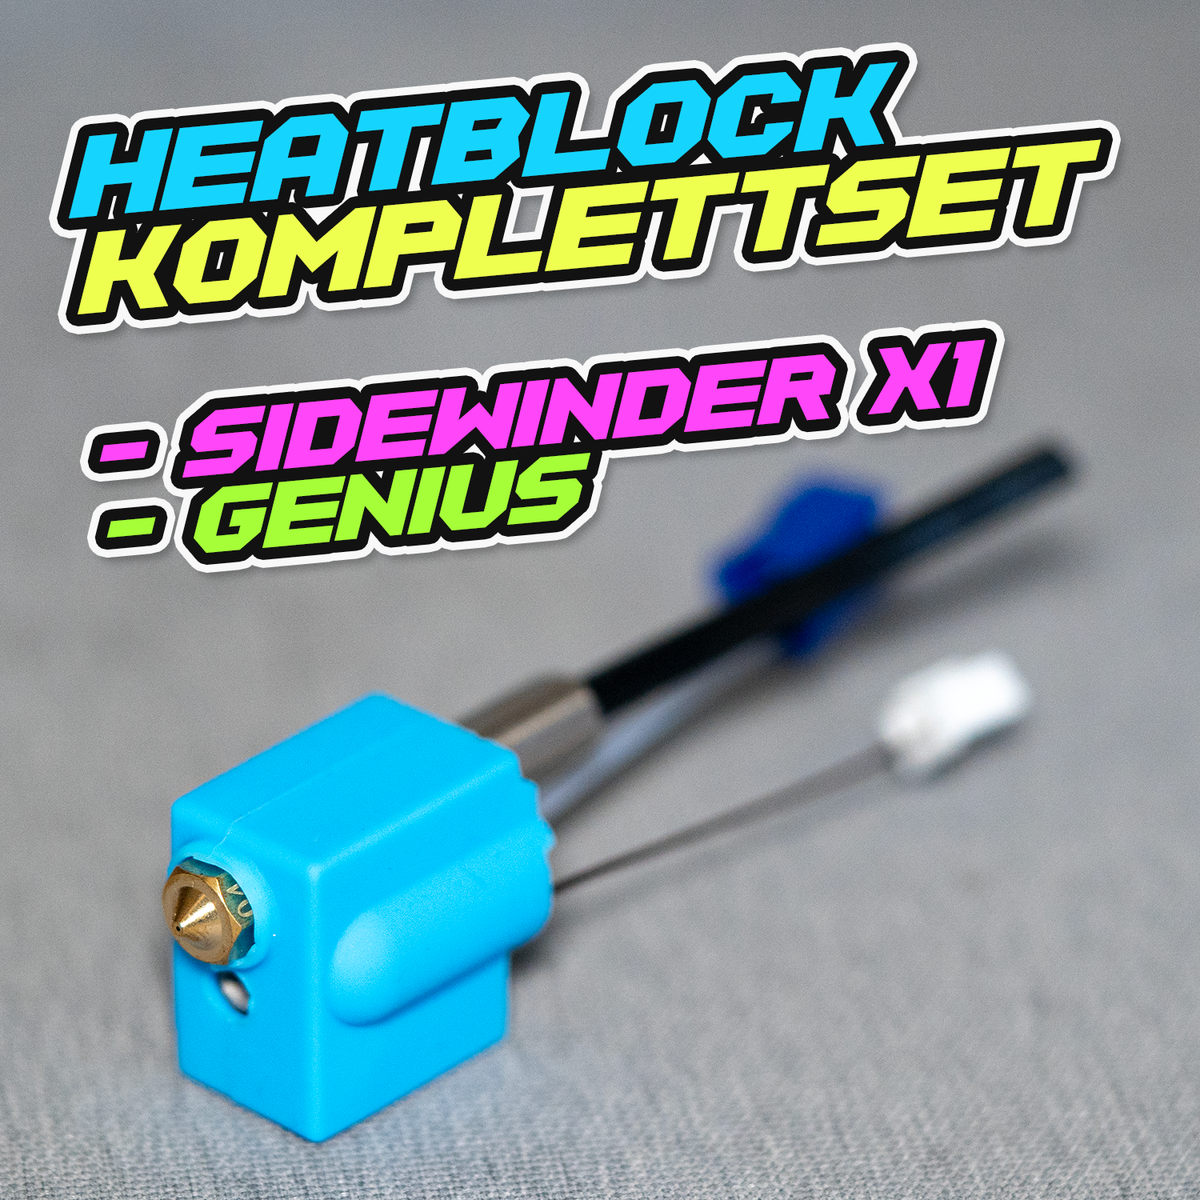 Heizblock KOMPLETTSET (z.B. Sidewinder X1 / X2 / GENIUS)